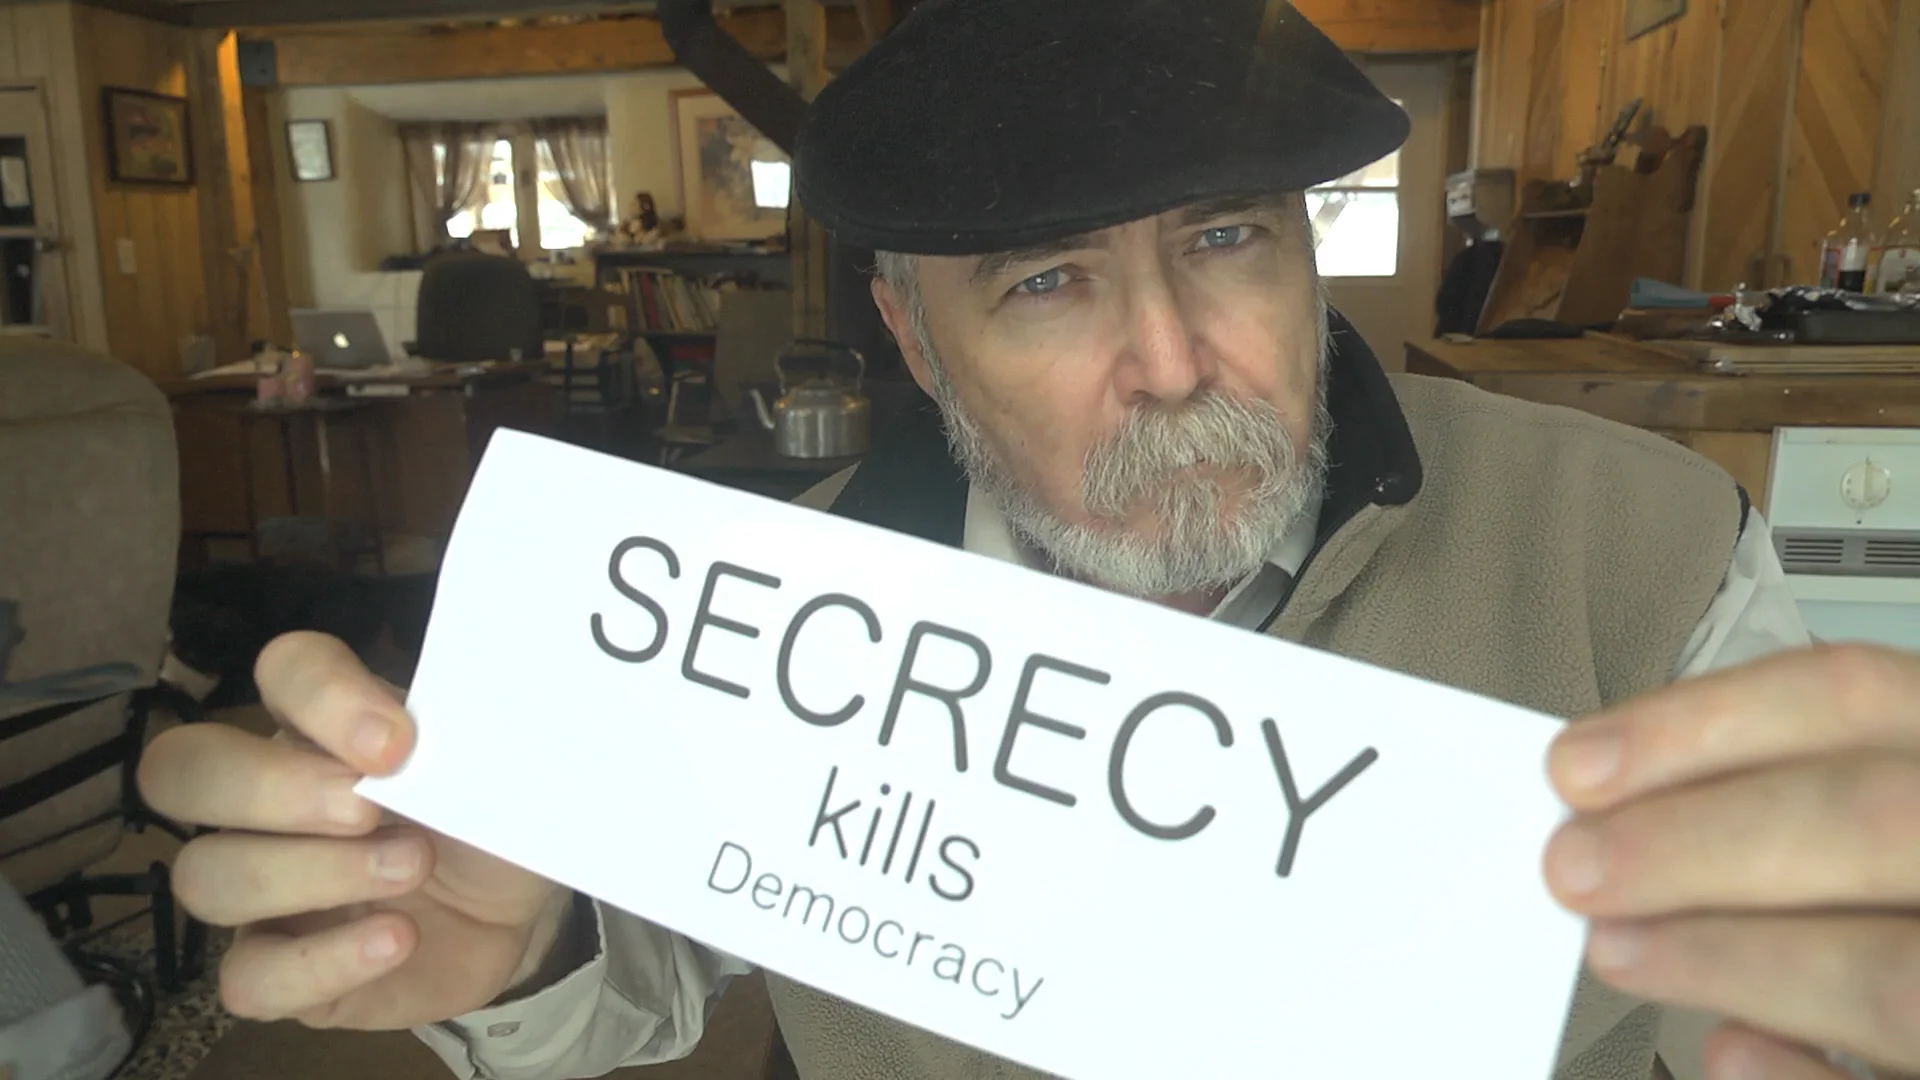 Secrets kill democracy